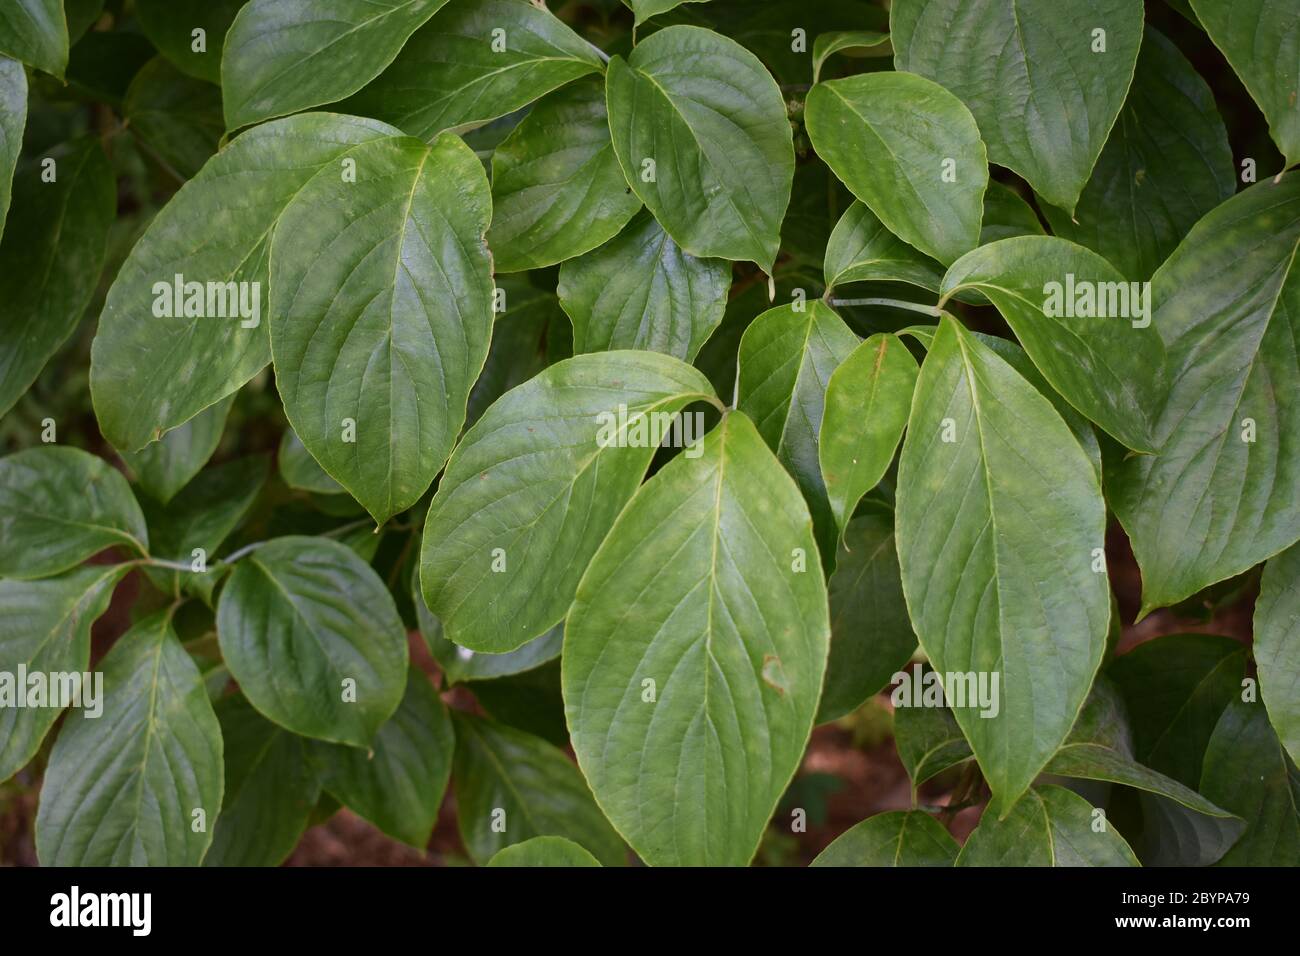 dogwood tree leaf identification